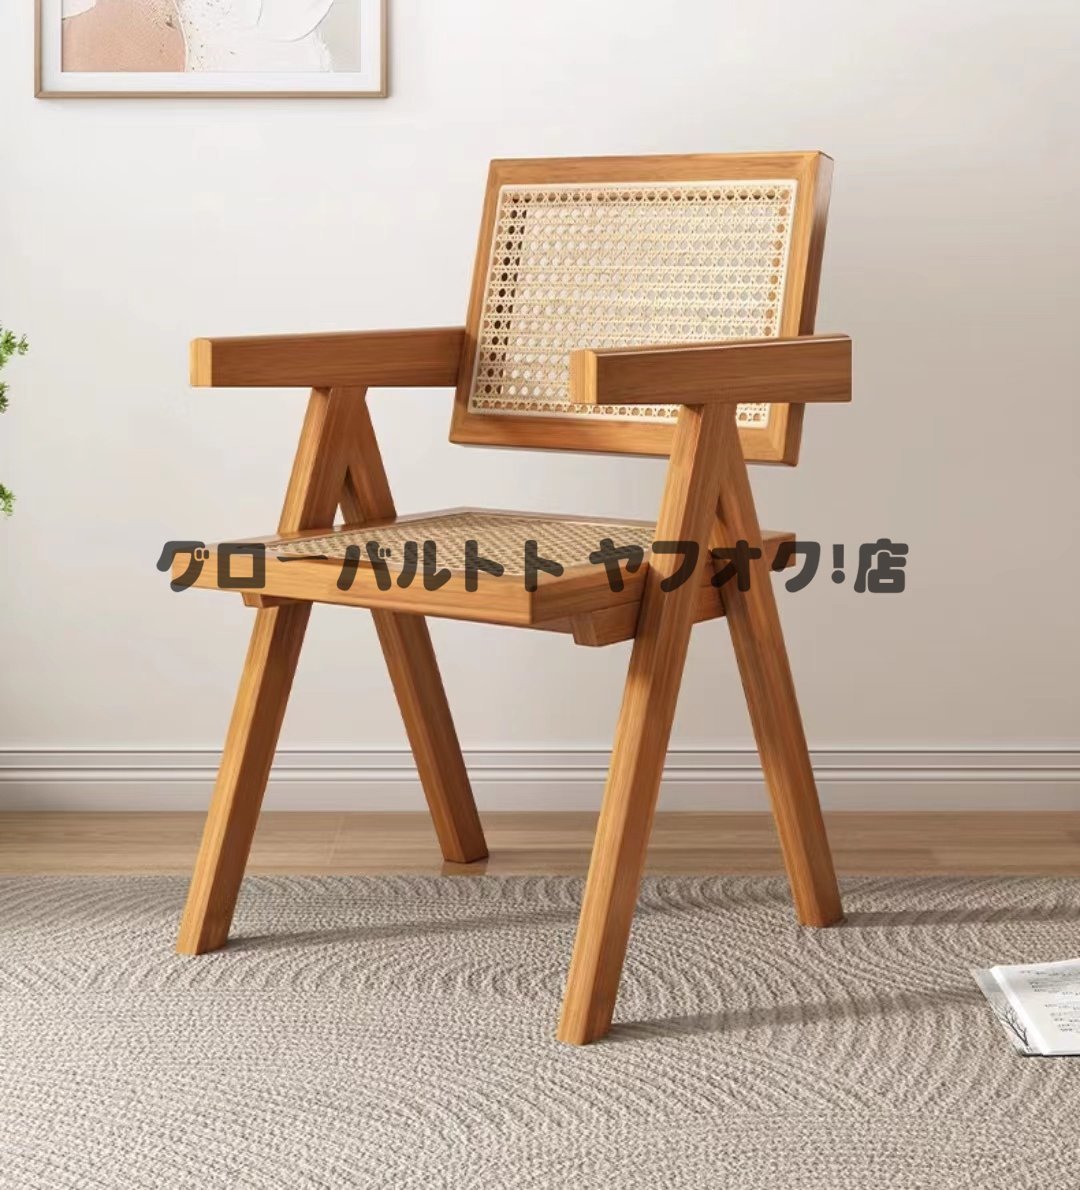 超人気 籐編み チェア 椅子 ラタン 籐編み ダイニングチェア 食卓チェア リビングチェア 北欧風 S755